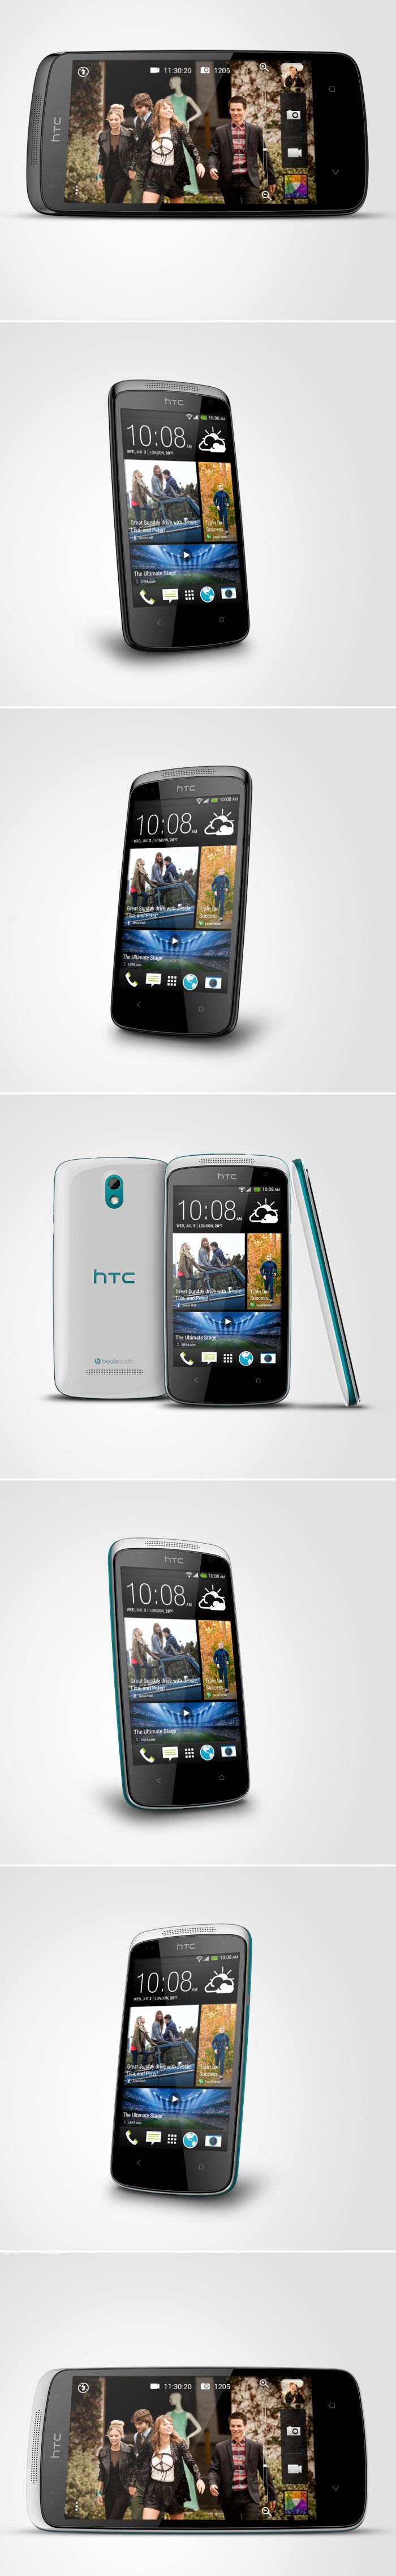 HTC Desire 500: középkategóriás versenyző